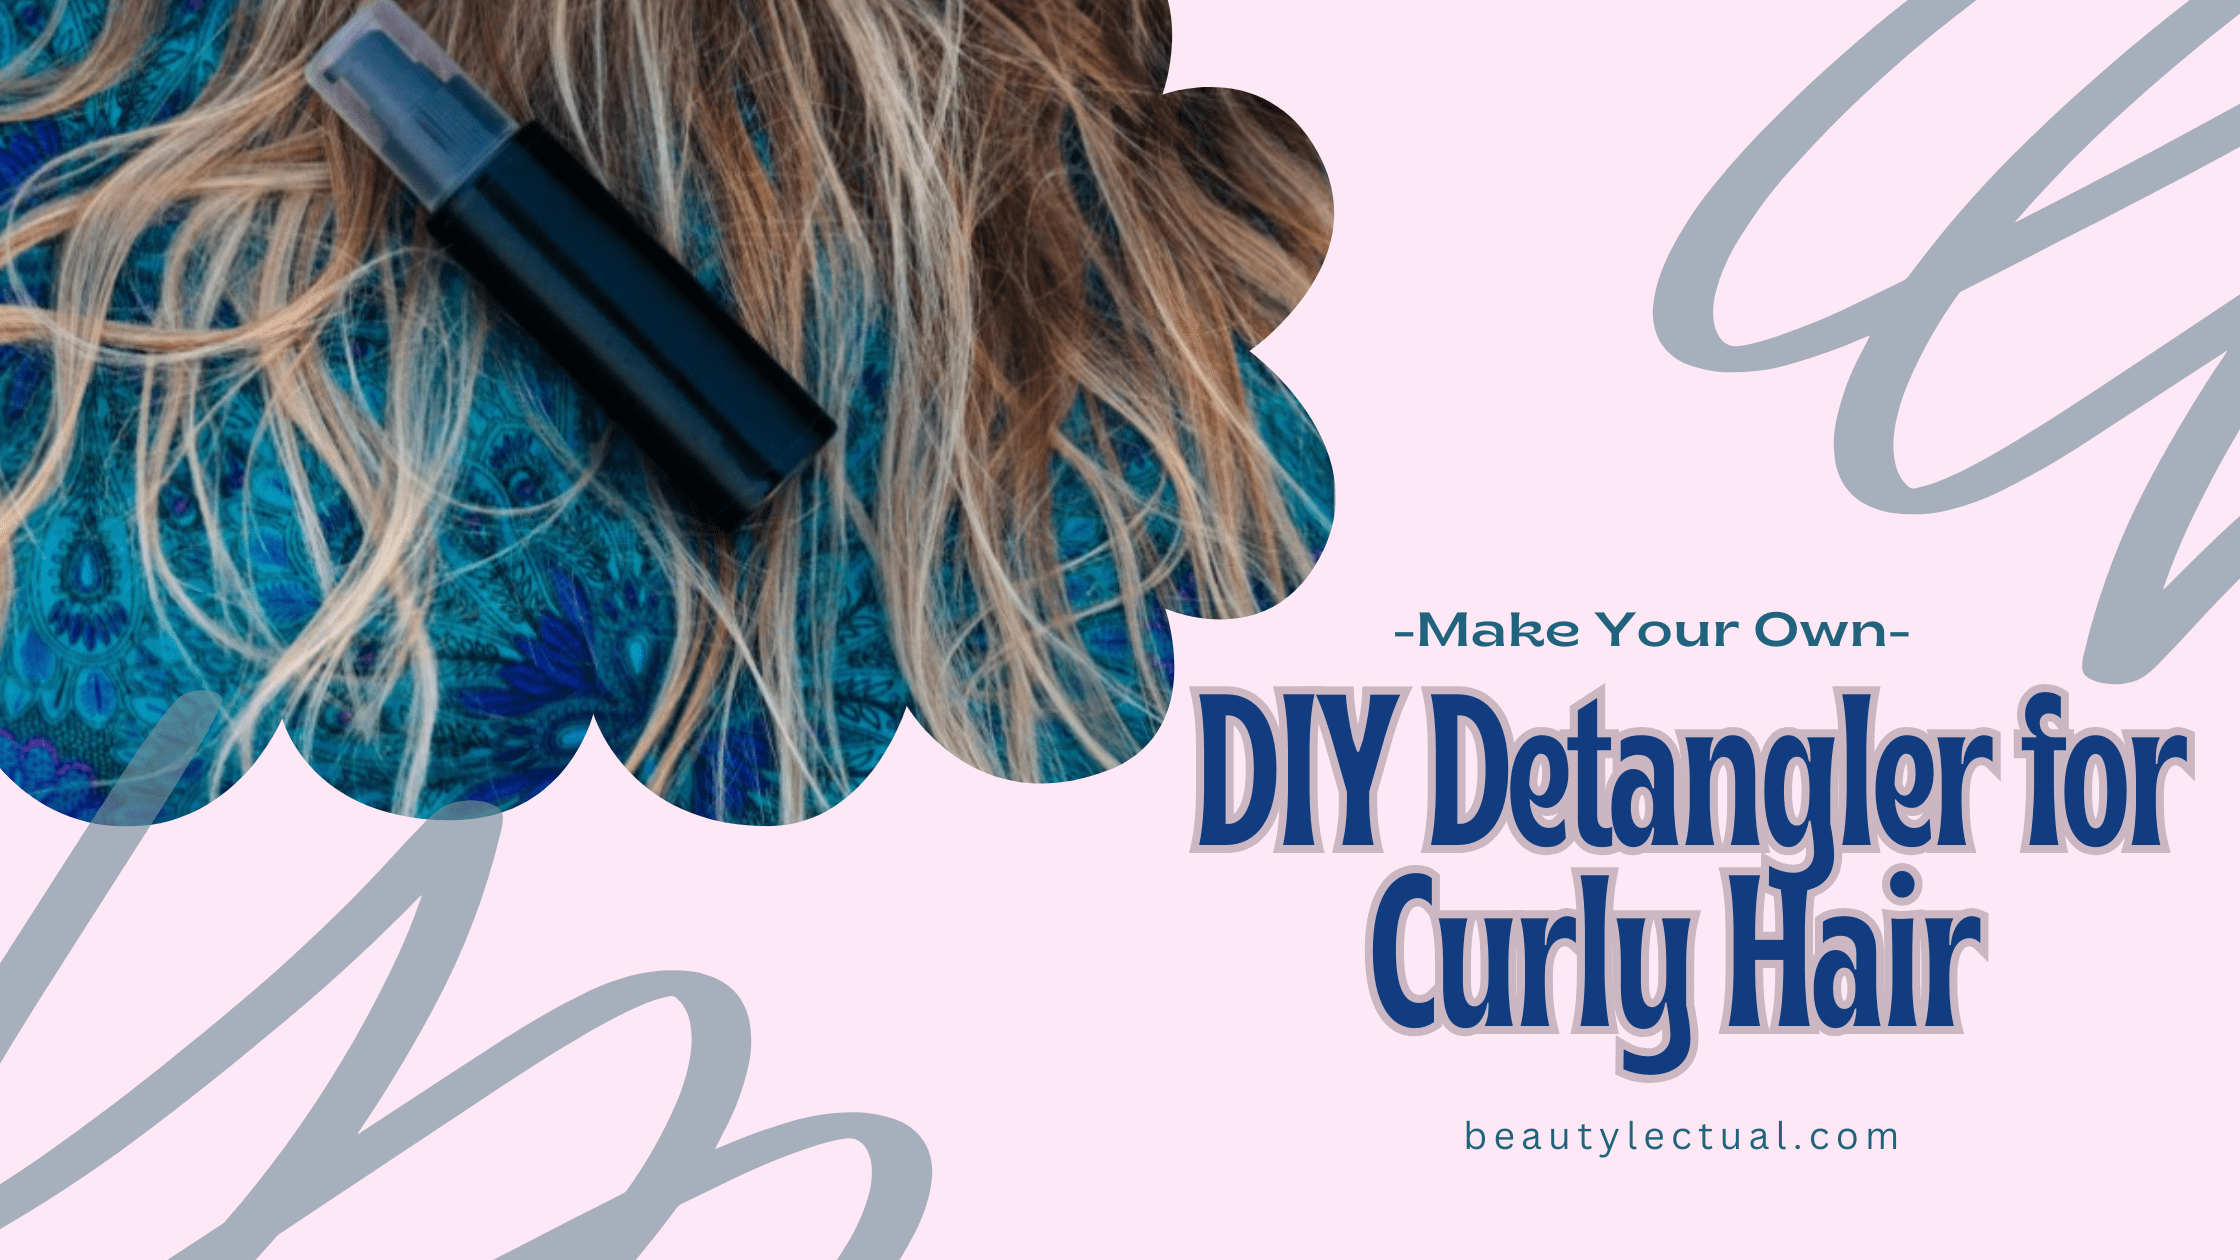 DIY hair detangler for curly hair